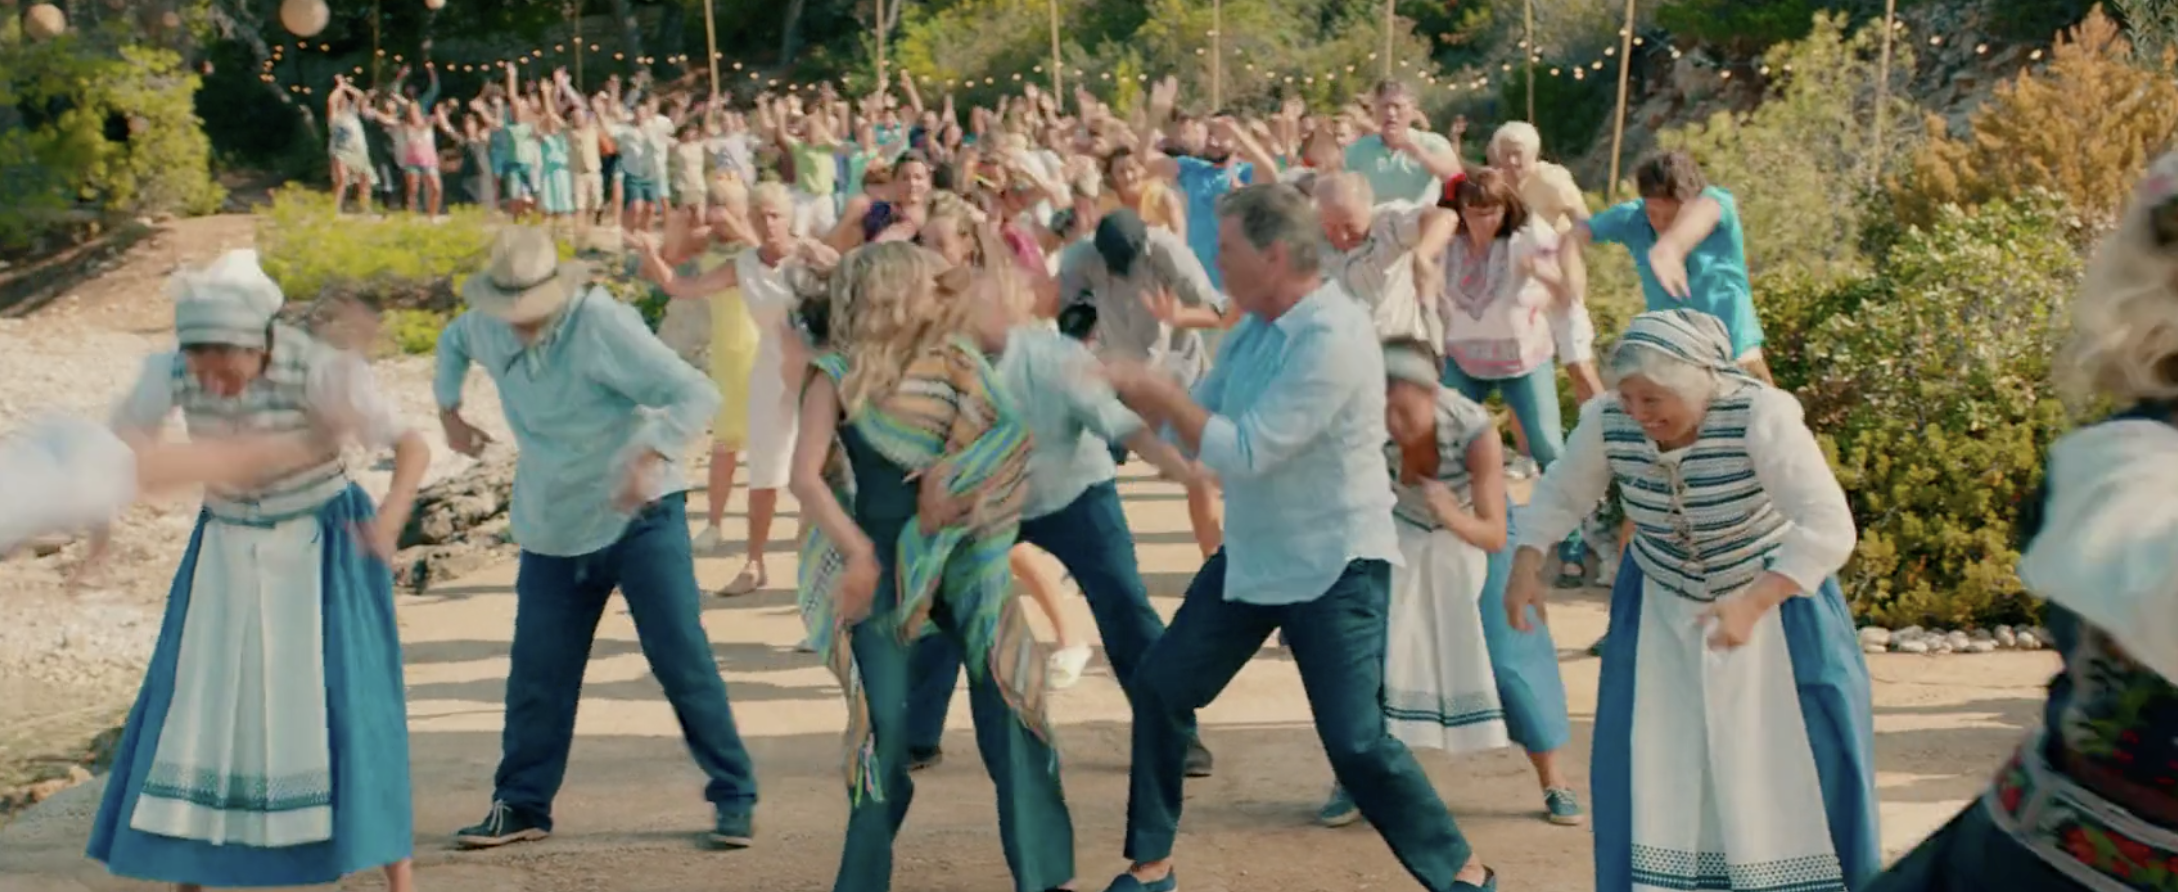 Image belongs to Universal Pictures. dancing scene in Mamma Mia II